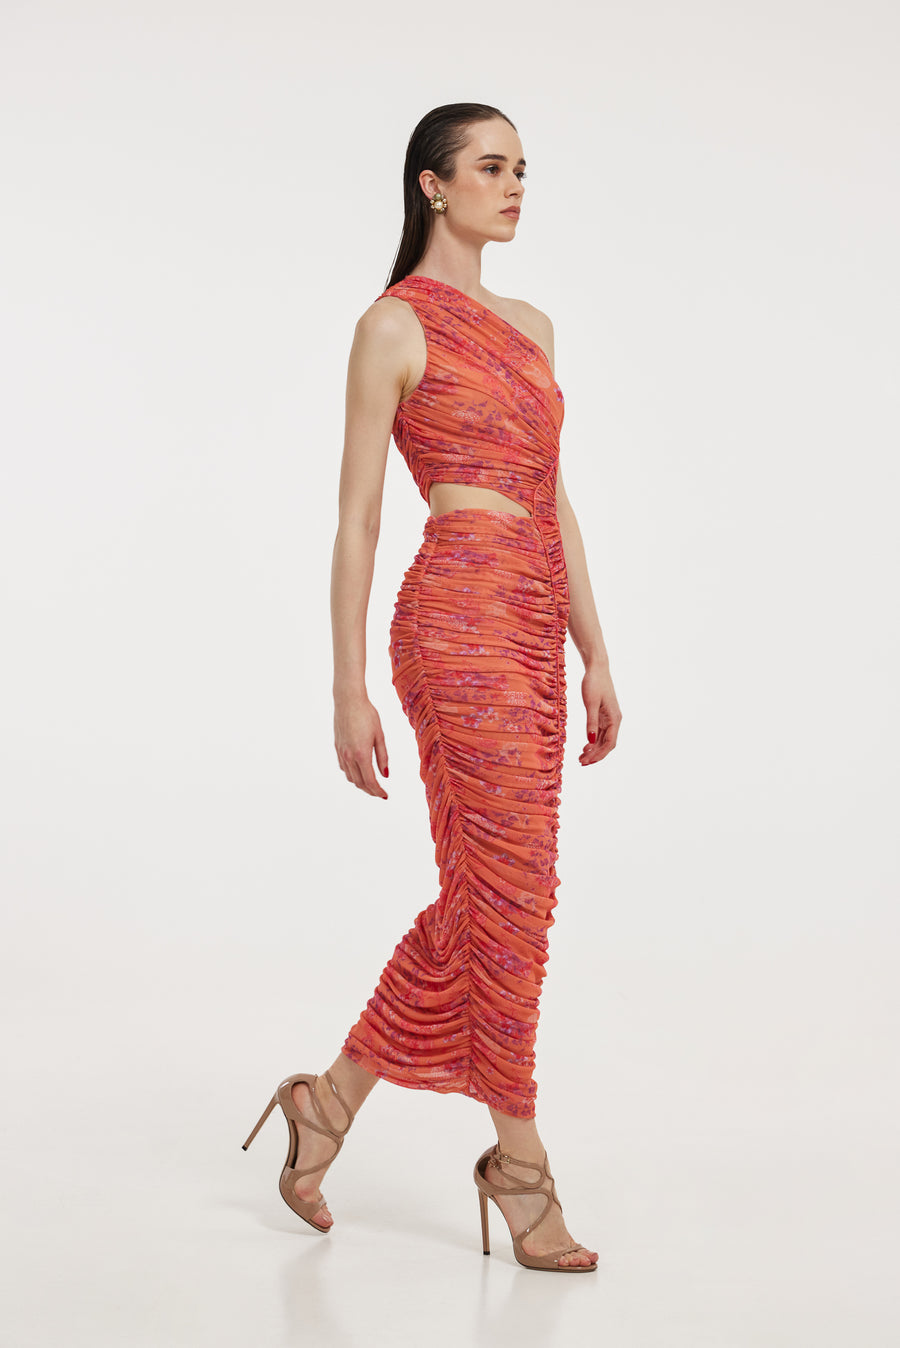 Pandora Dress (Coral)